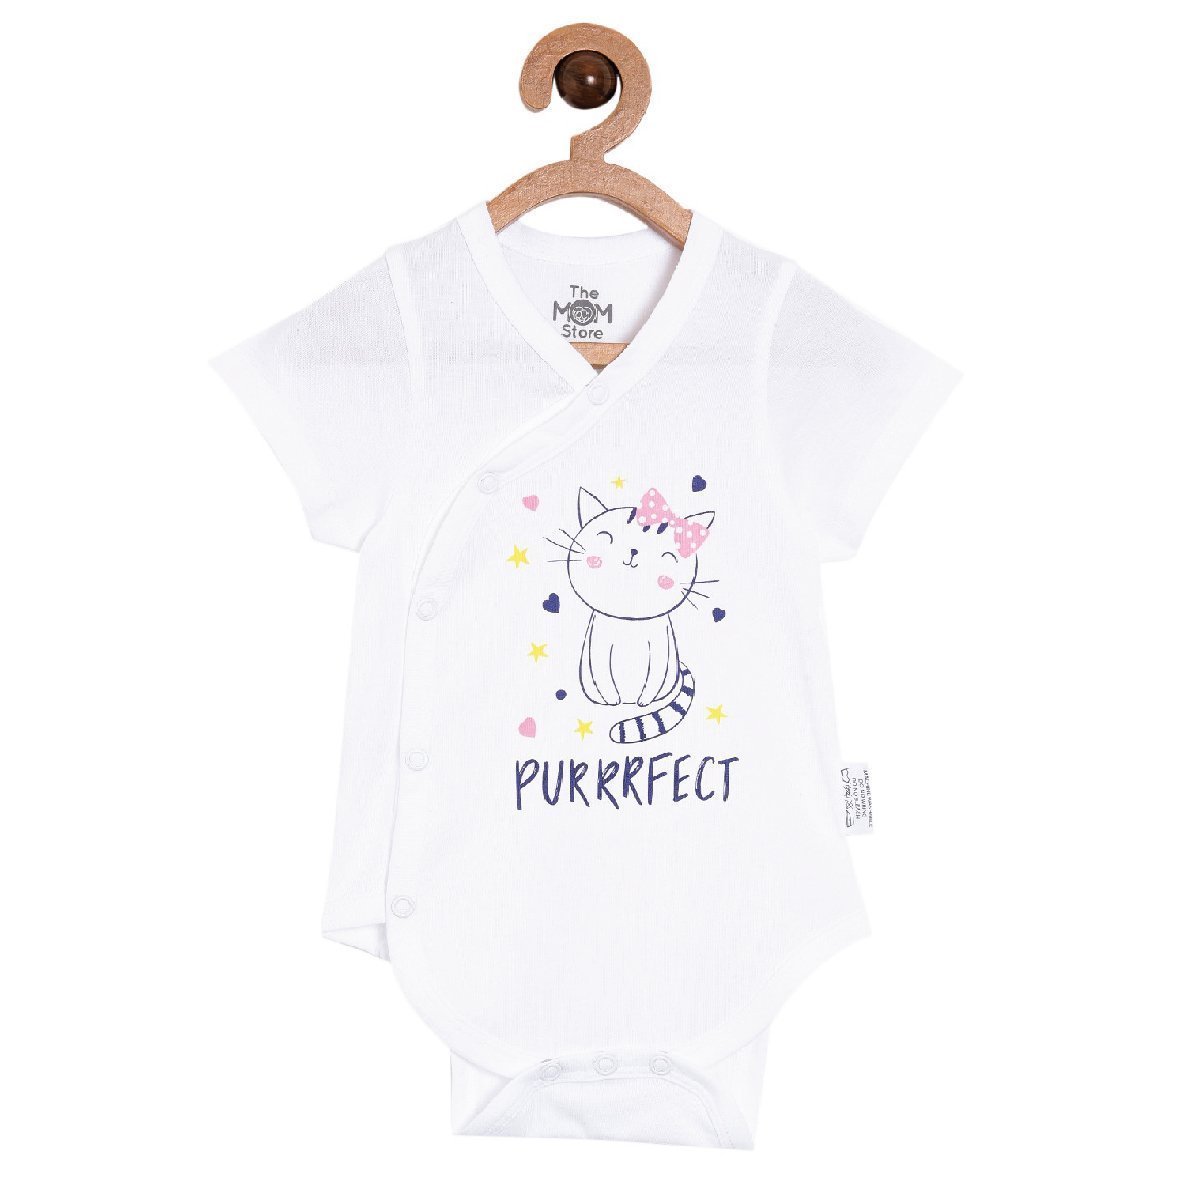 Purrrfect Baby Onesie - ONC-PFCT-PM